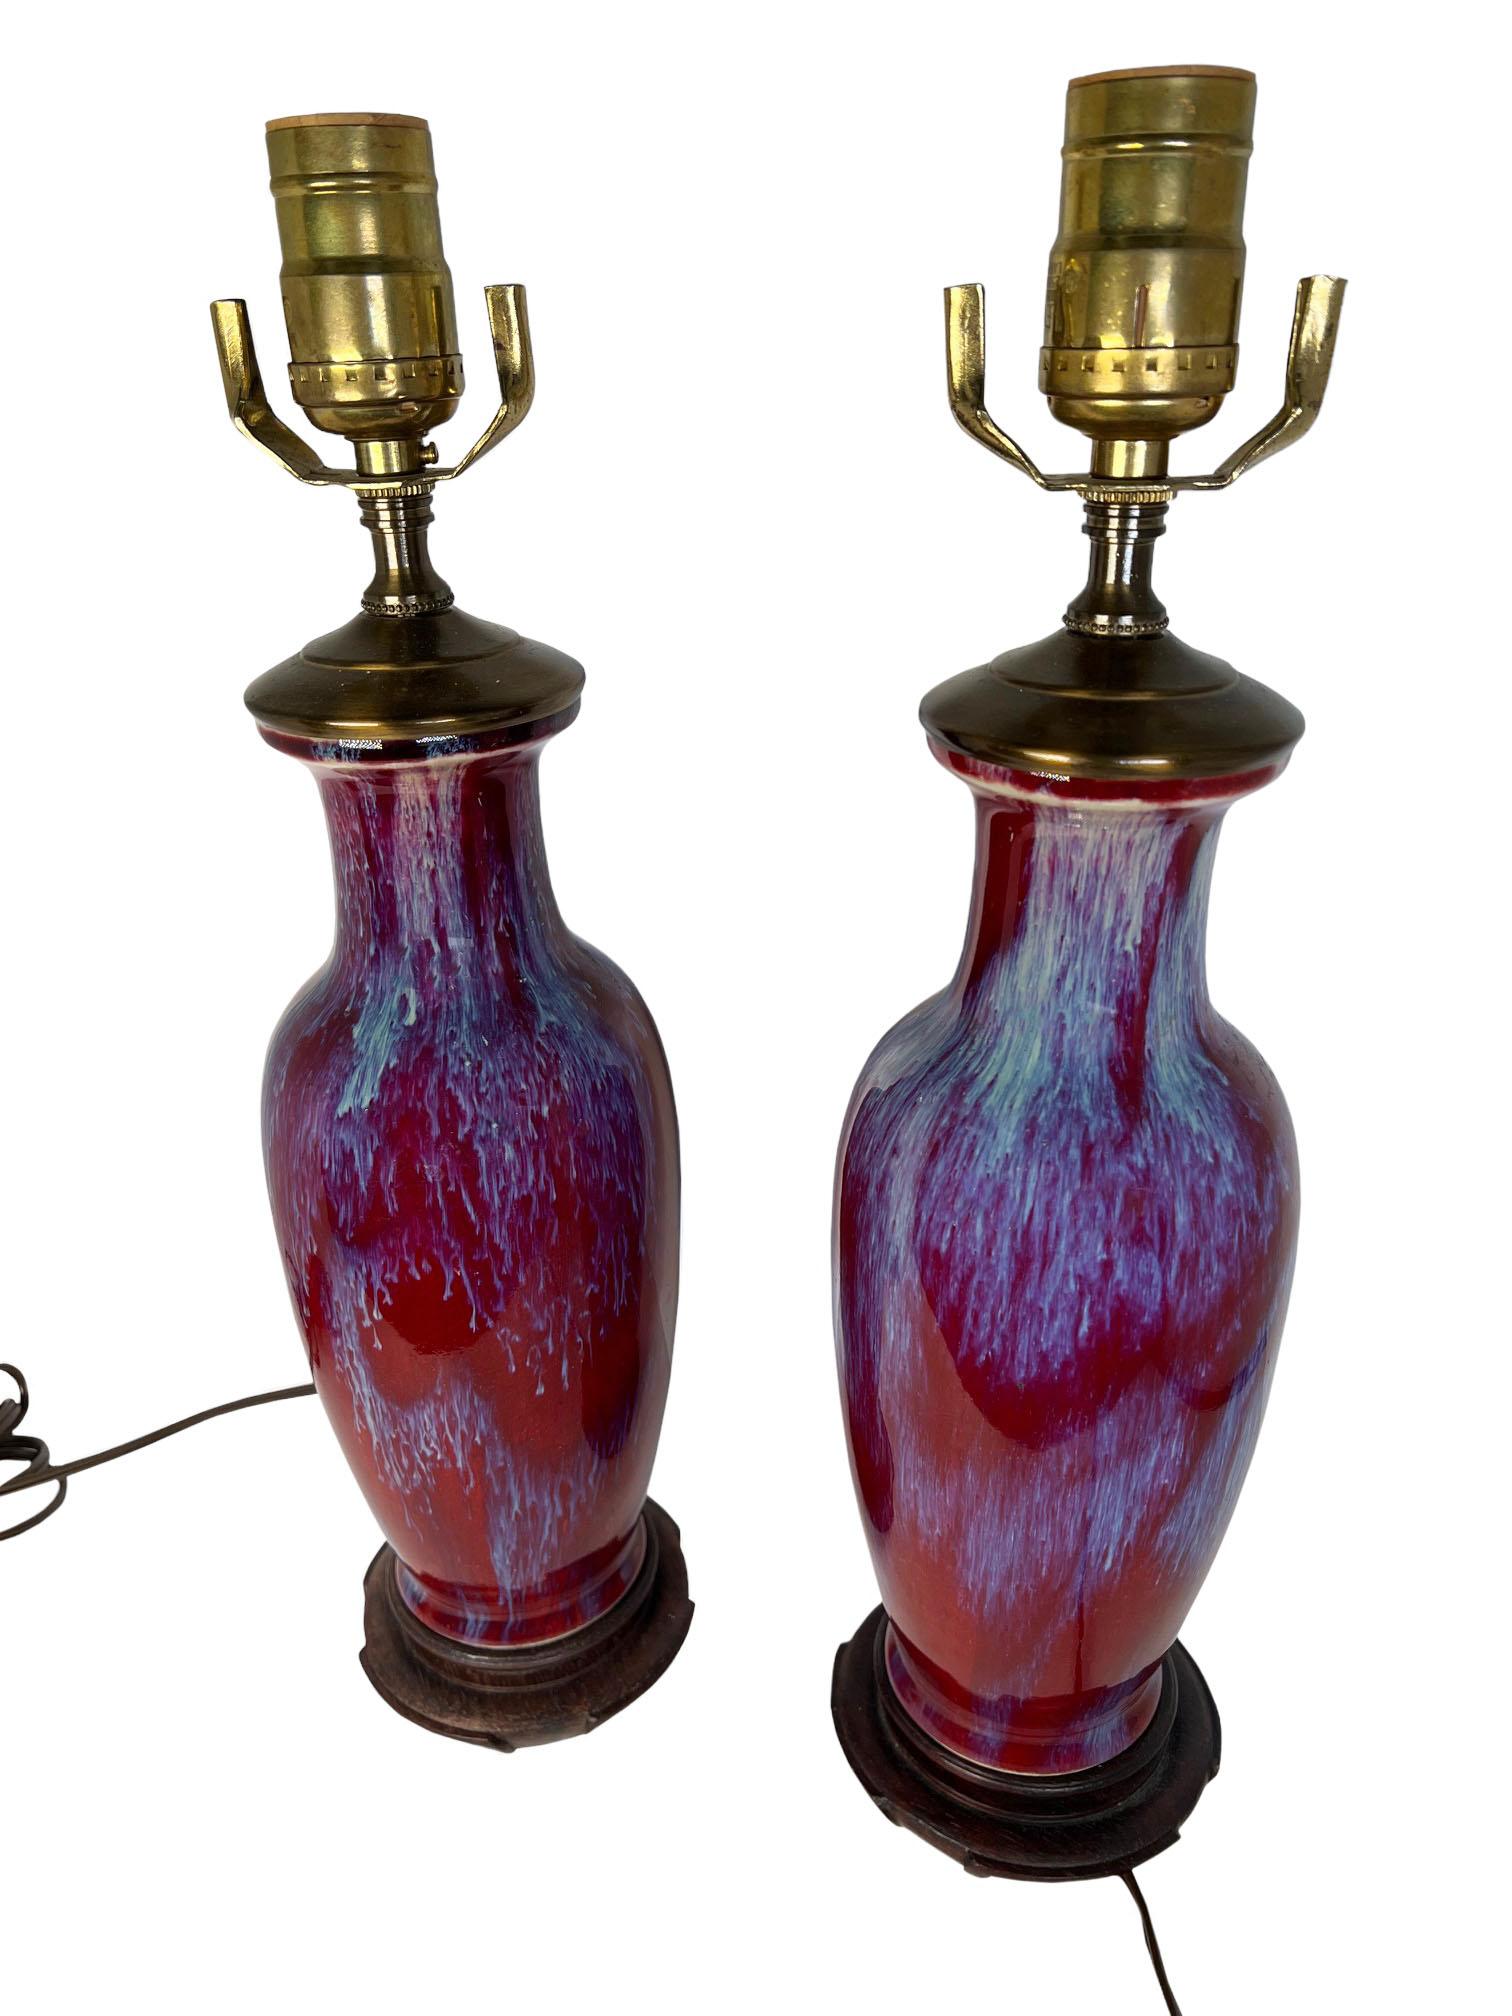 Ein Paar Sung de Boeuf-Vasen, umgewandelt in Lampen mit Holzsockel. 20. Jahrhundert China.